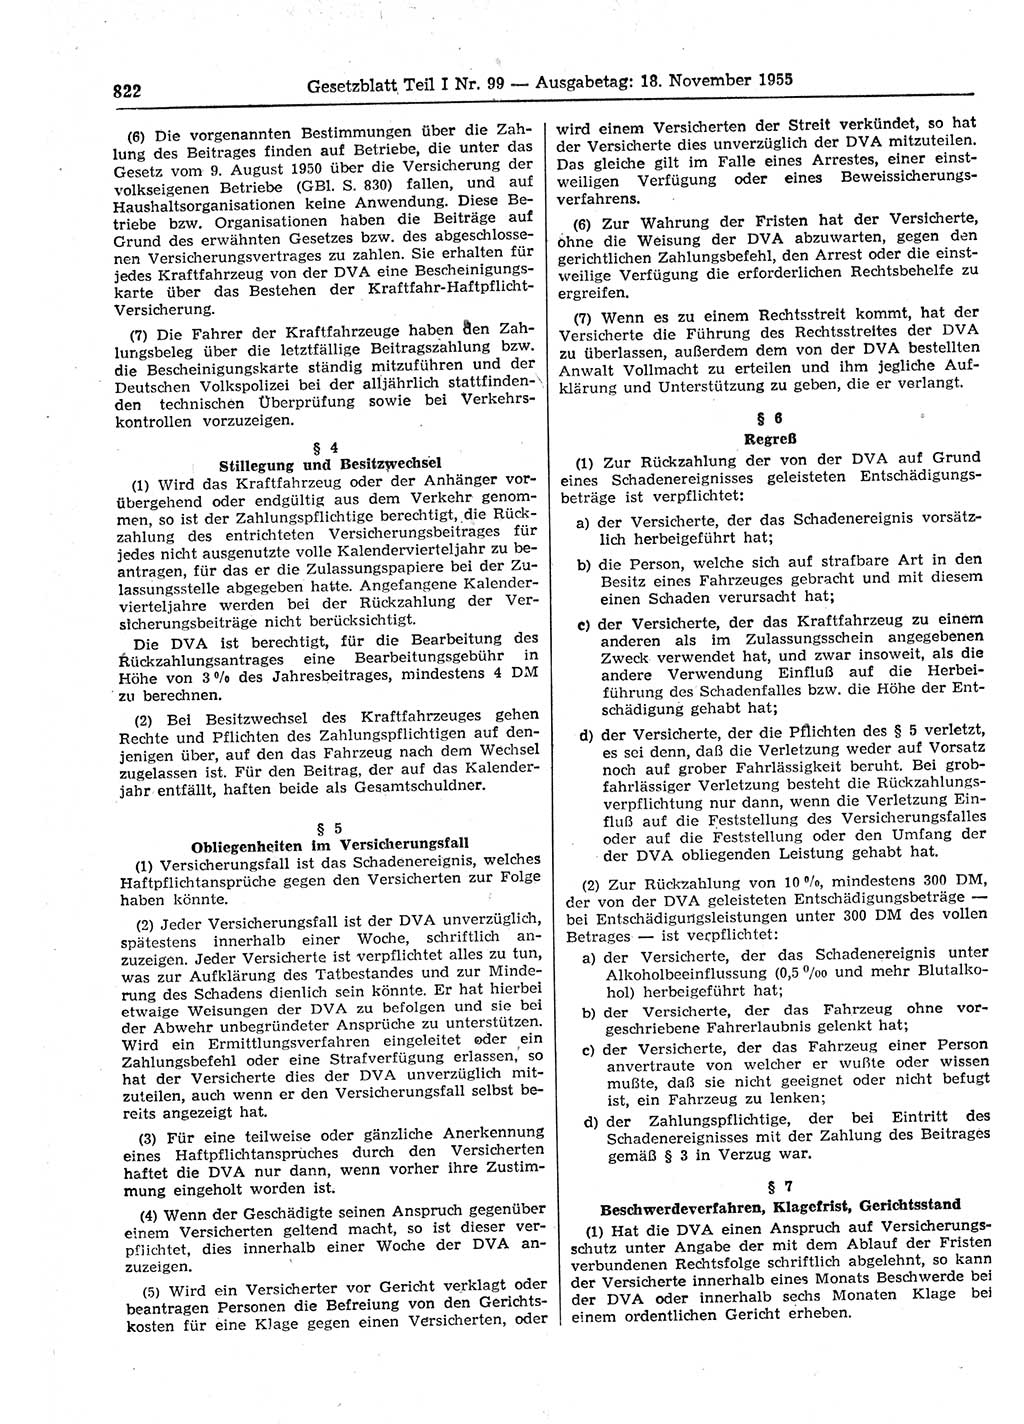 Gesetzblatt (GBl.) der Deutschen Demokratischen Republik (DDR) Teil Ⅰ 1955, Seite 822 (GBl. DDR Ⅰ 1955, S. 822)